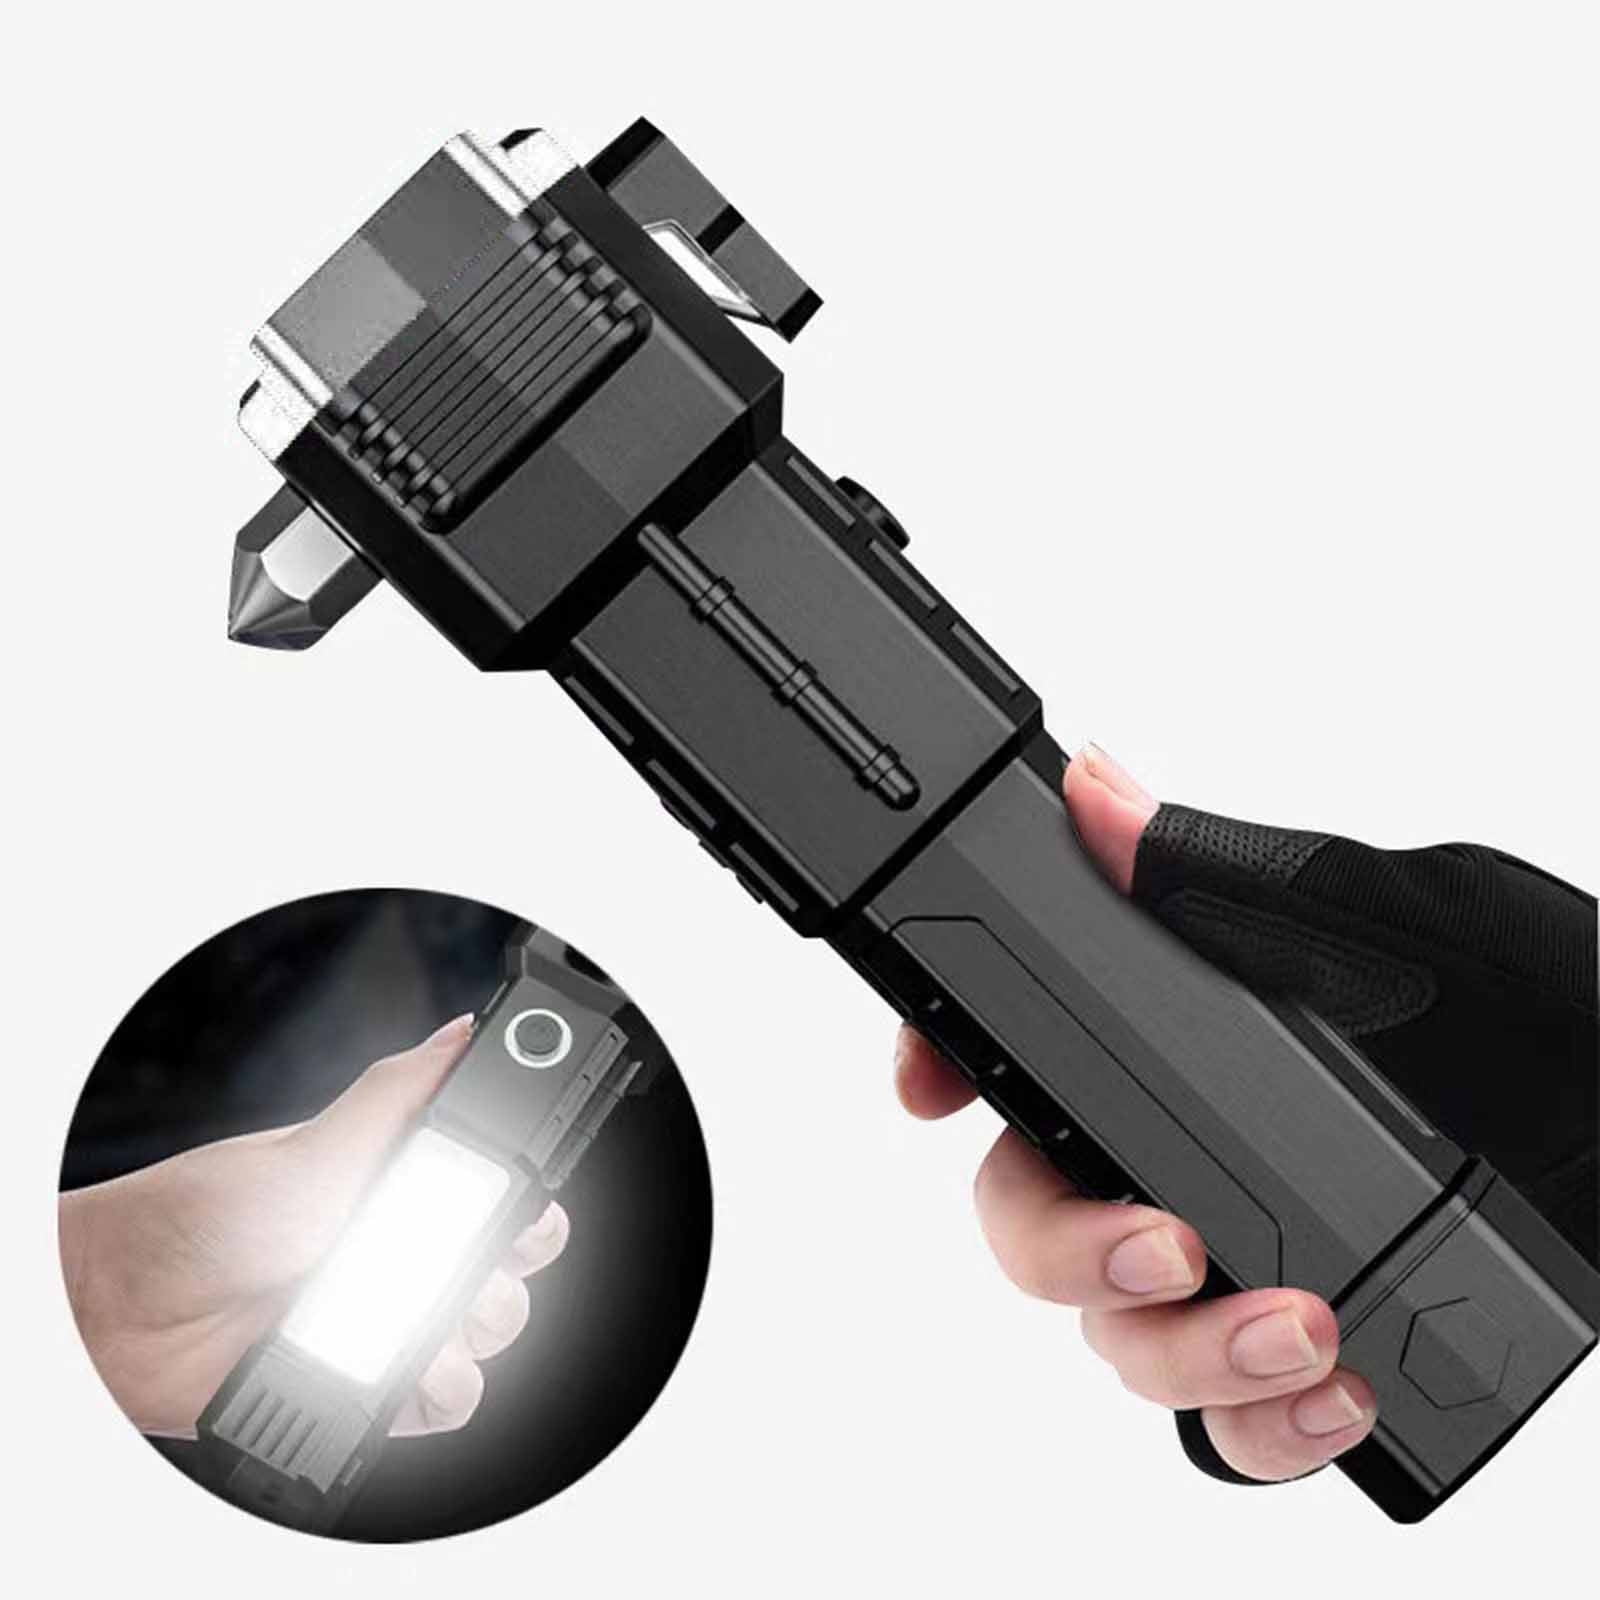 Jikolililili Car Safety Hammer Flashlight,Emergency Escape tool